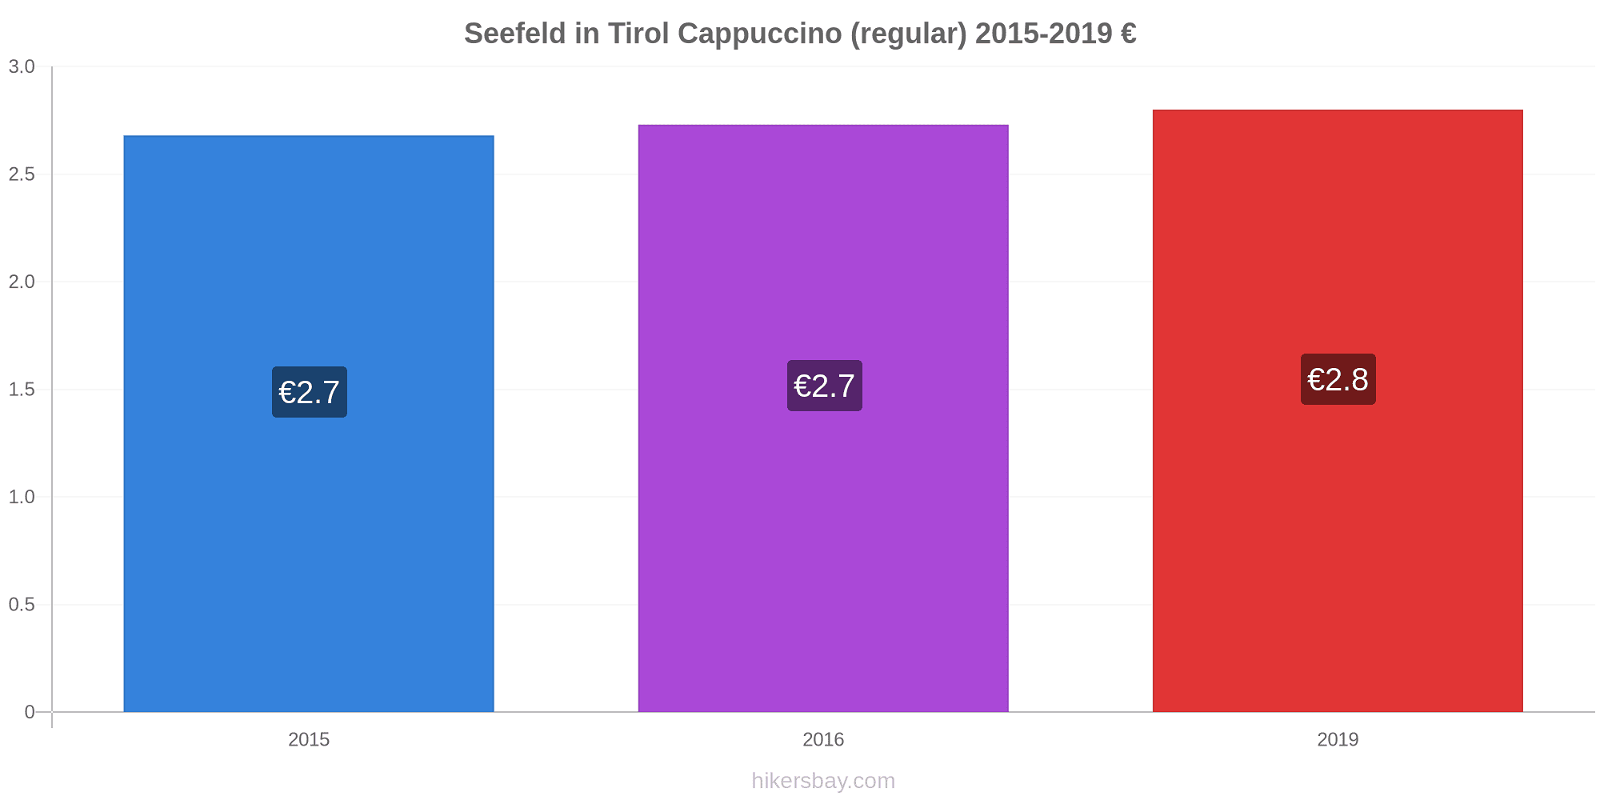 Seefeld in Tirol price changes Cappuccino (regular) hikersbay.com